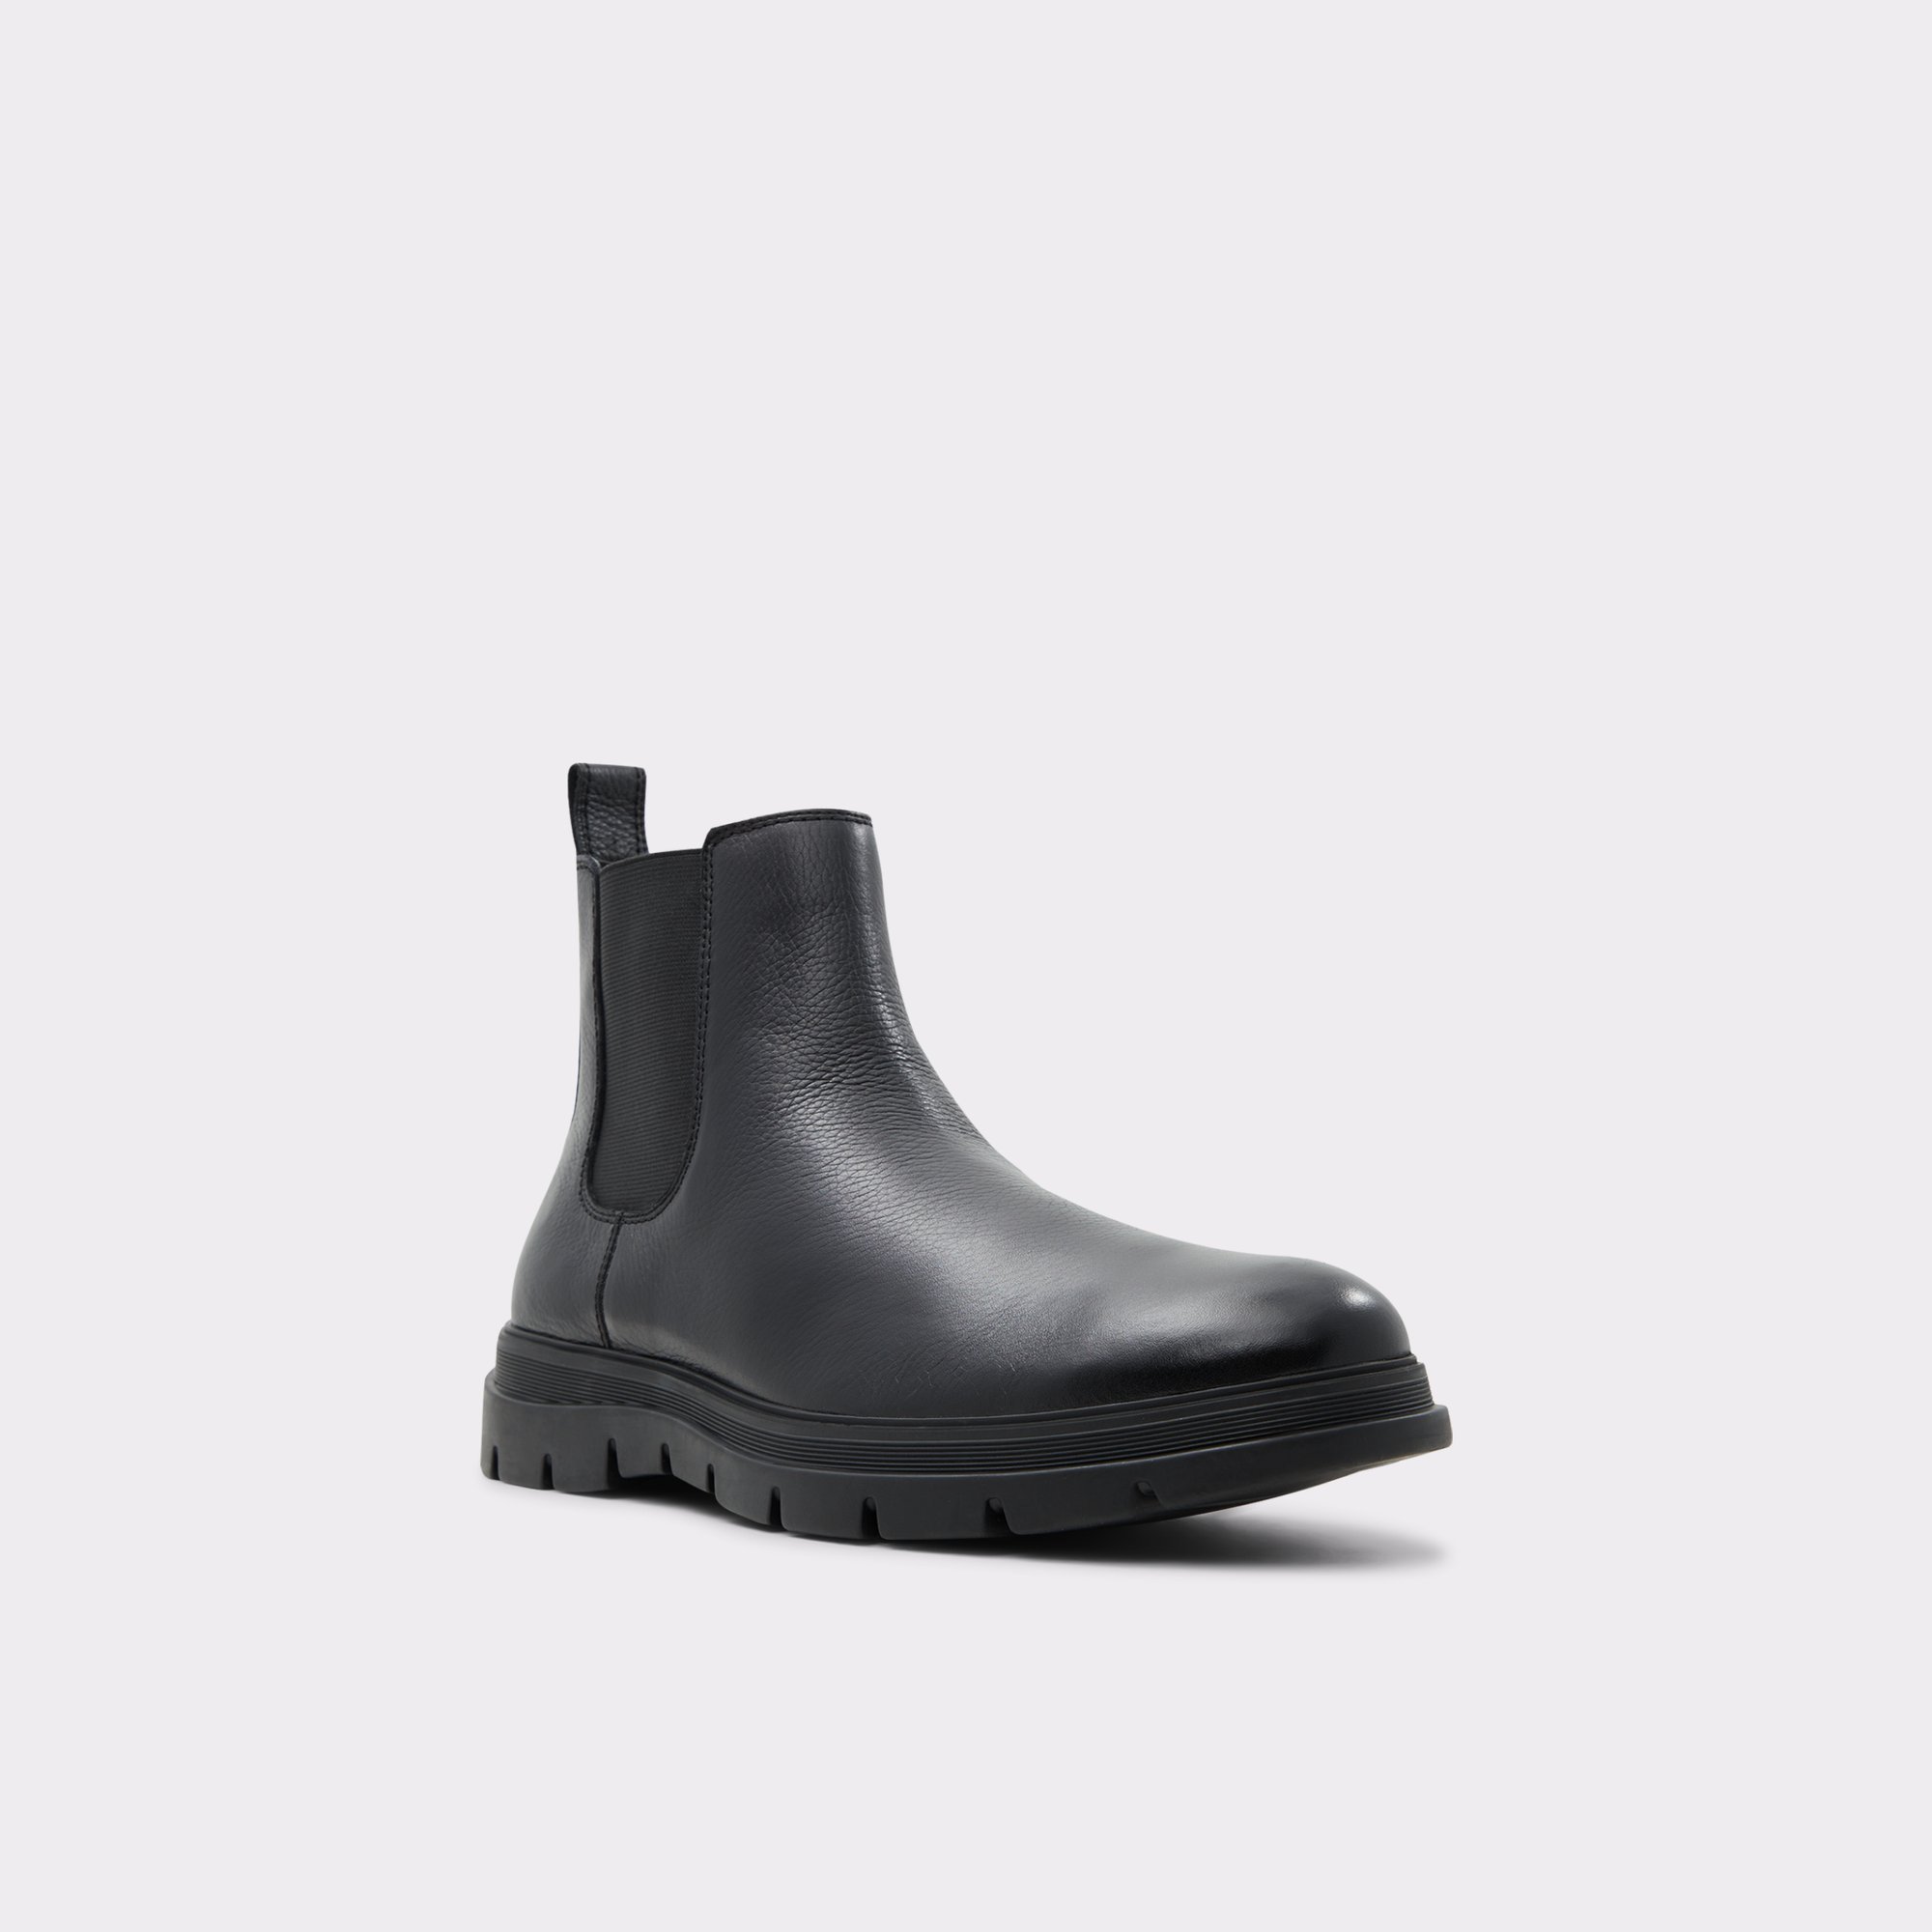 nuttet han vandfald Weannon Black Leather Pebble Men's Chelsea Boots | ALDO US